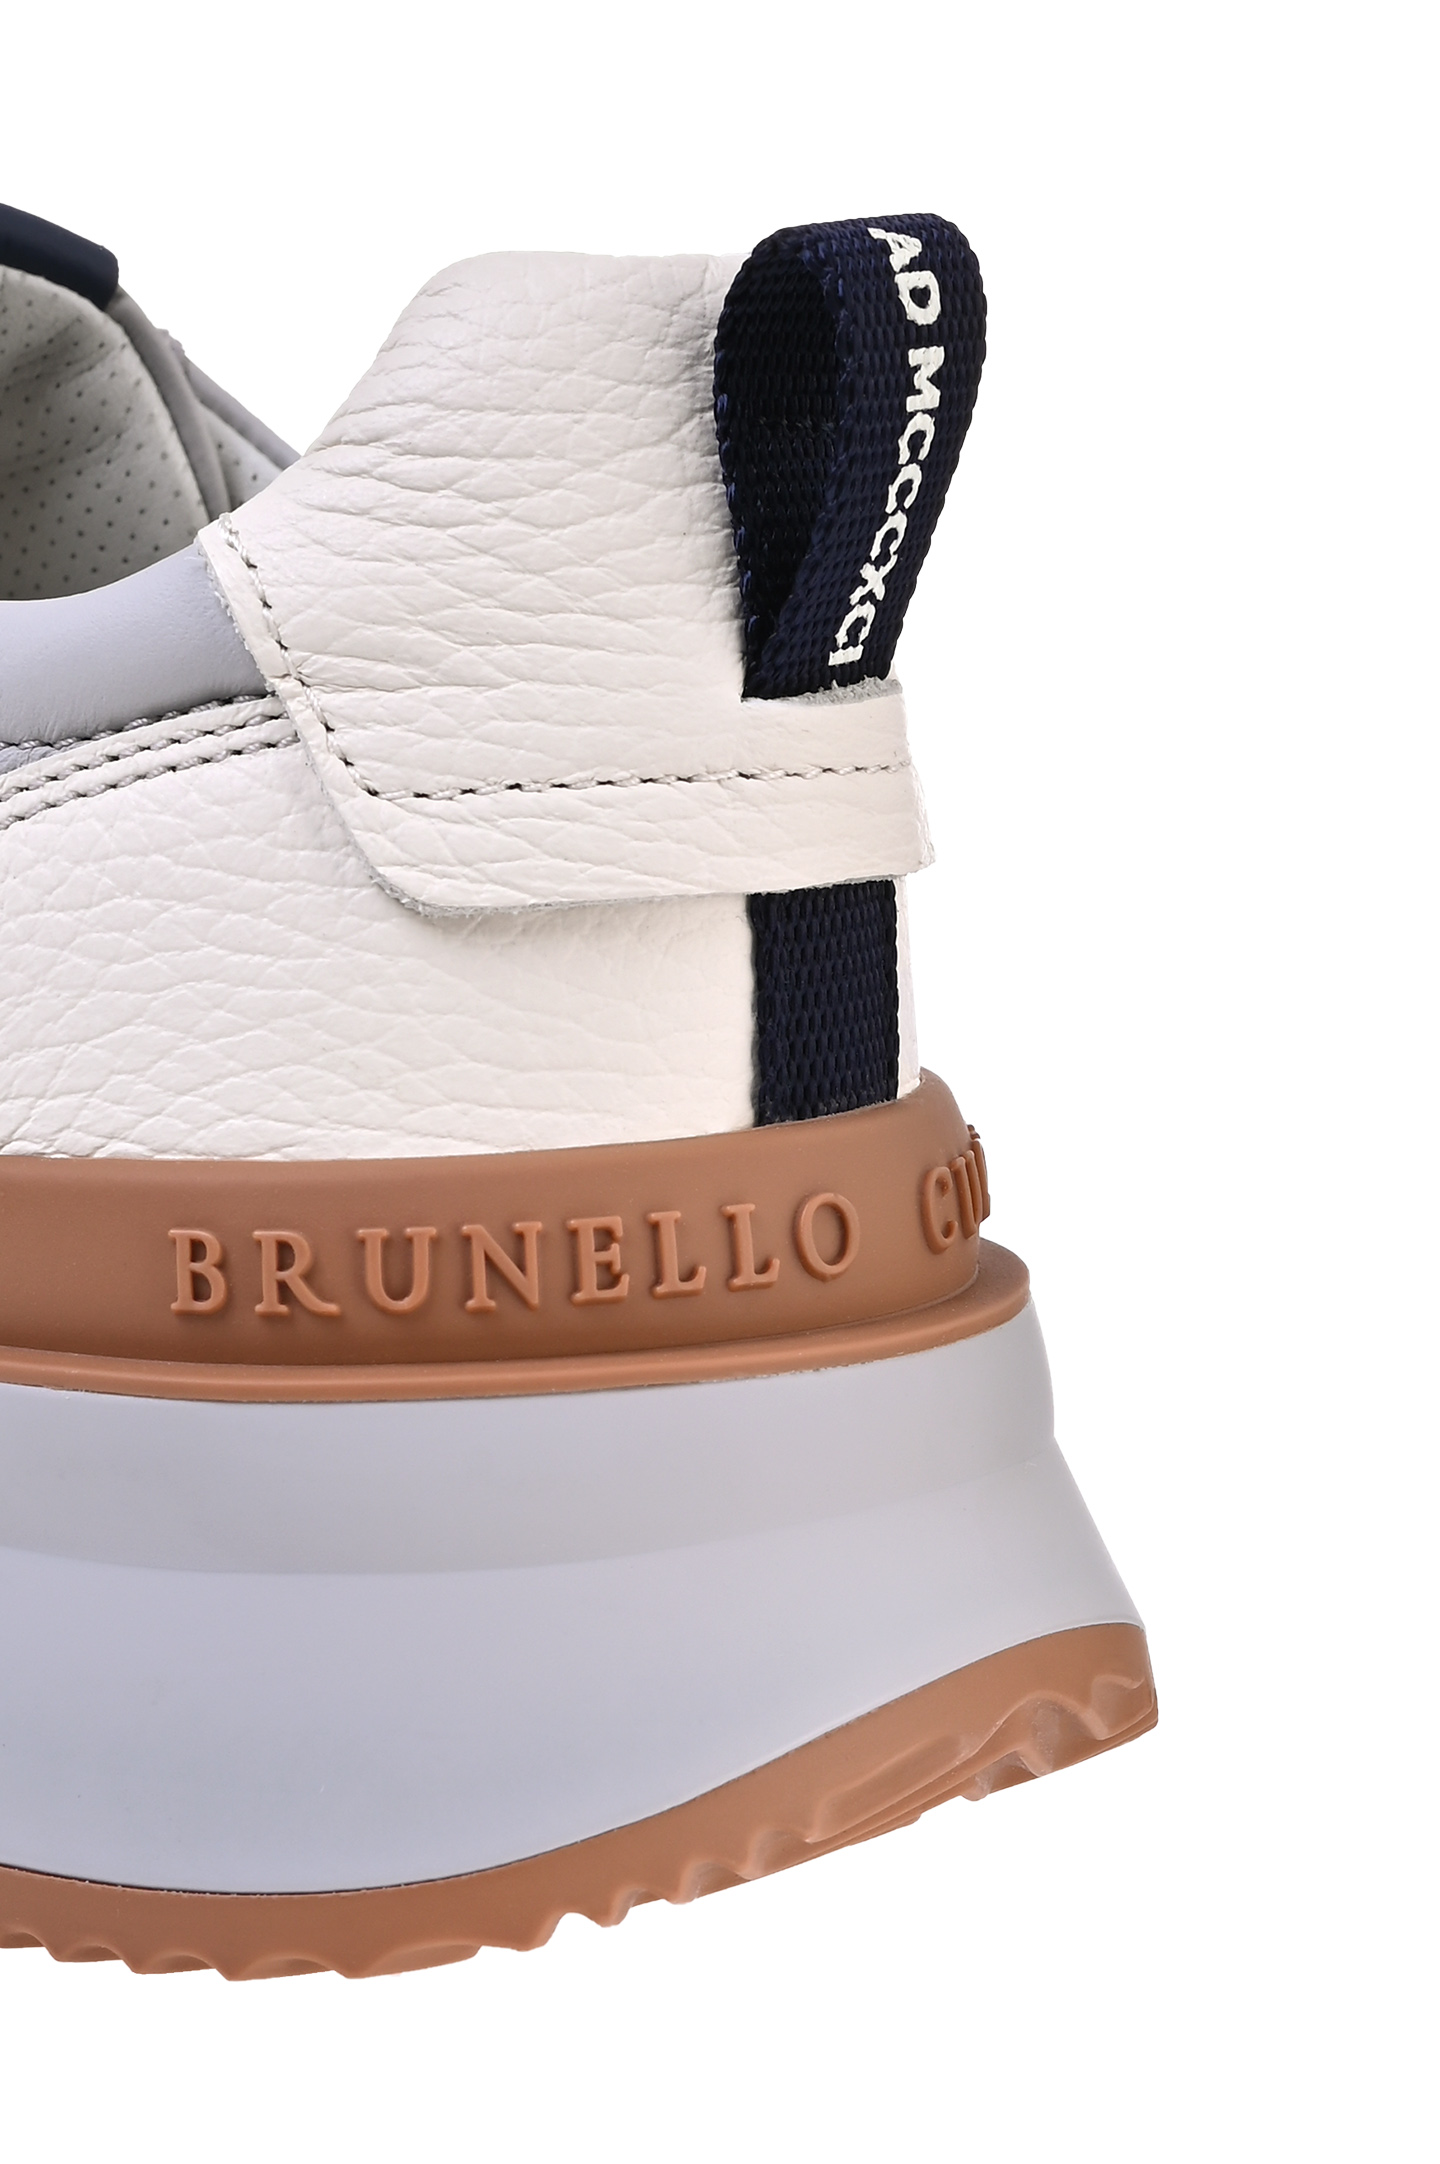 Кожаные кроссовки BRUNELLO  CUCINELLI MZULVLO278, цвет: Серый, Мужской